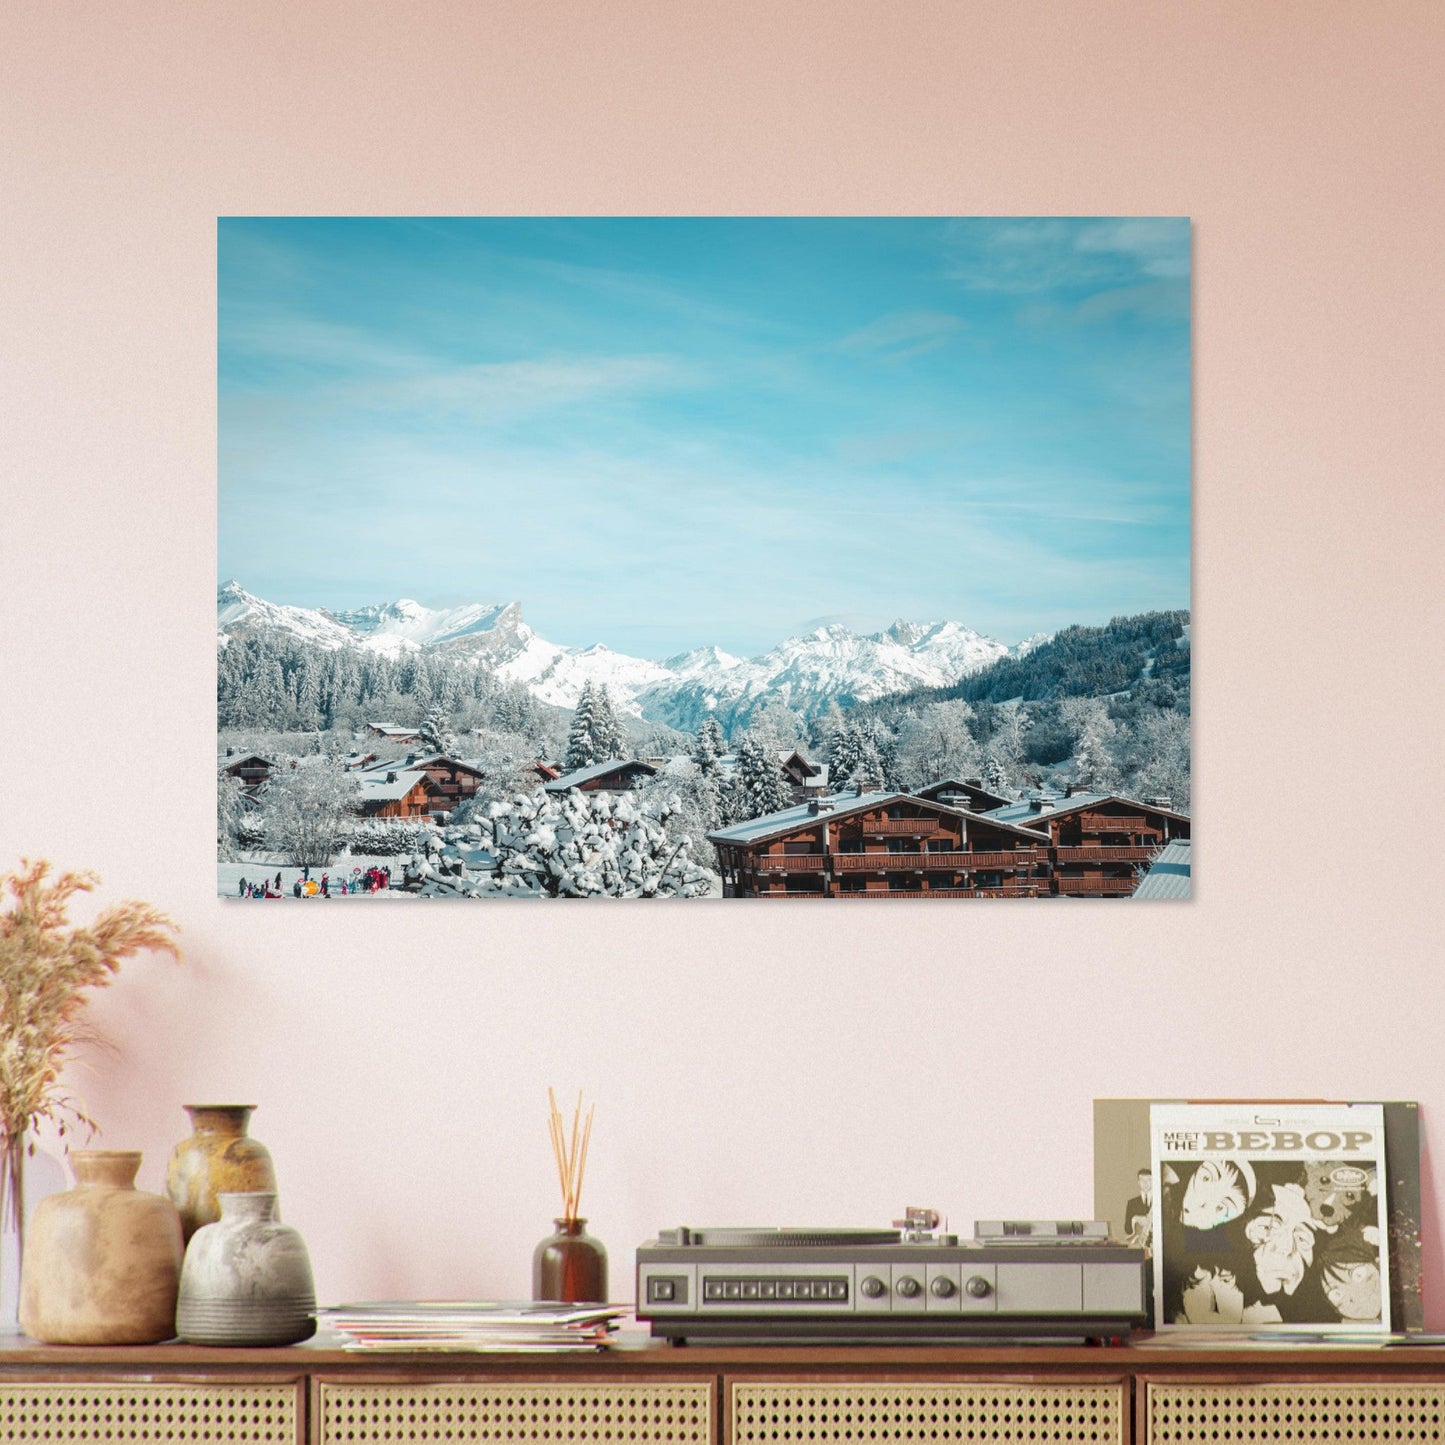 Vente Photo de Megève en hiver, Haute-Savoie - Tableau photo alu montagne